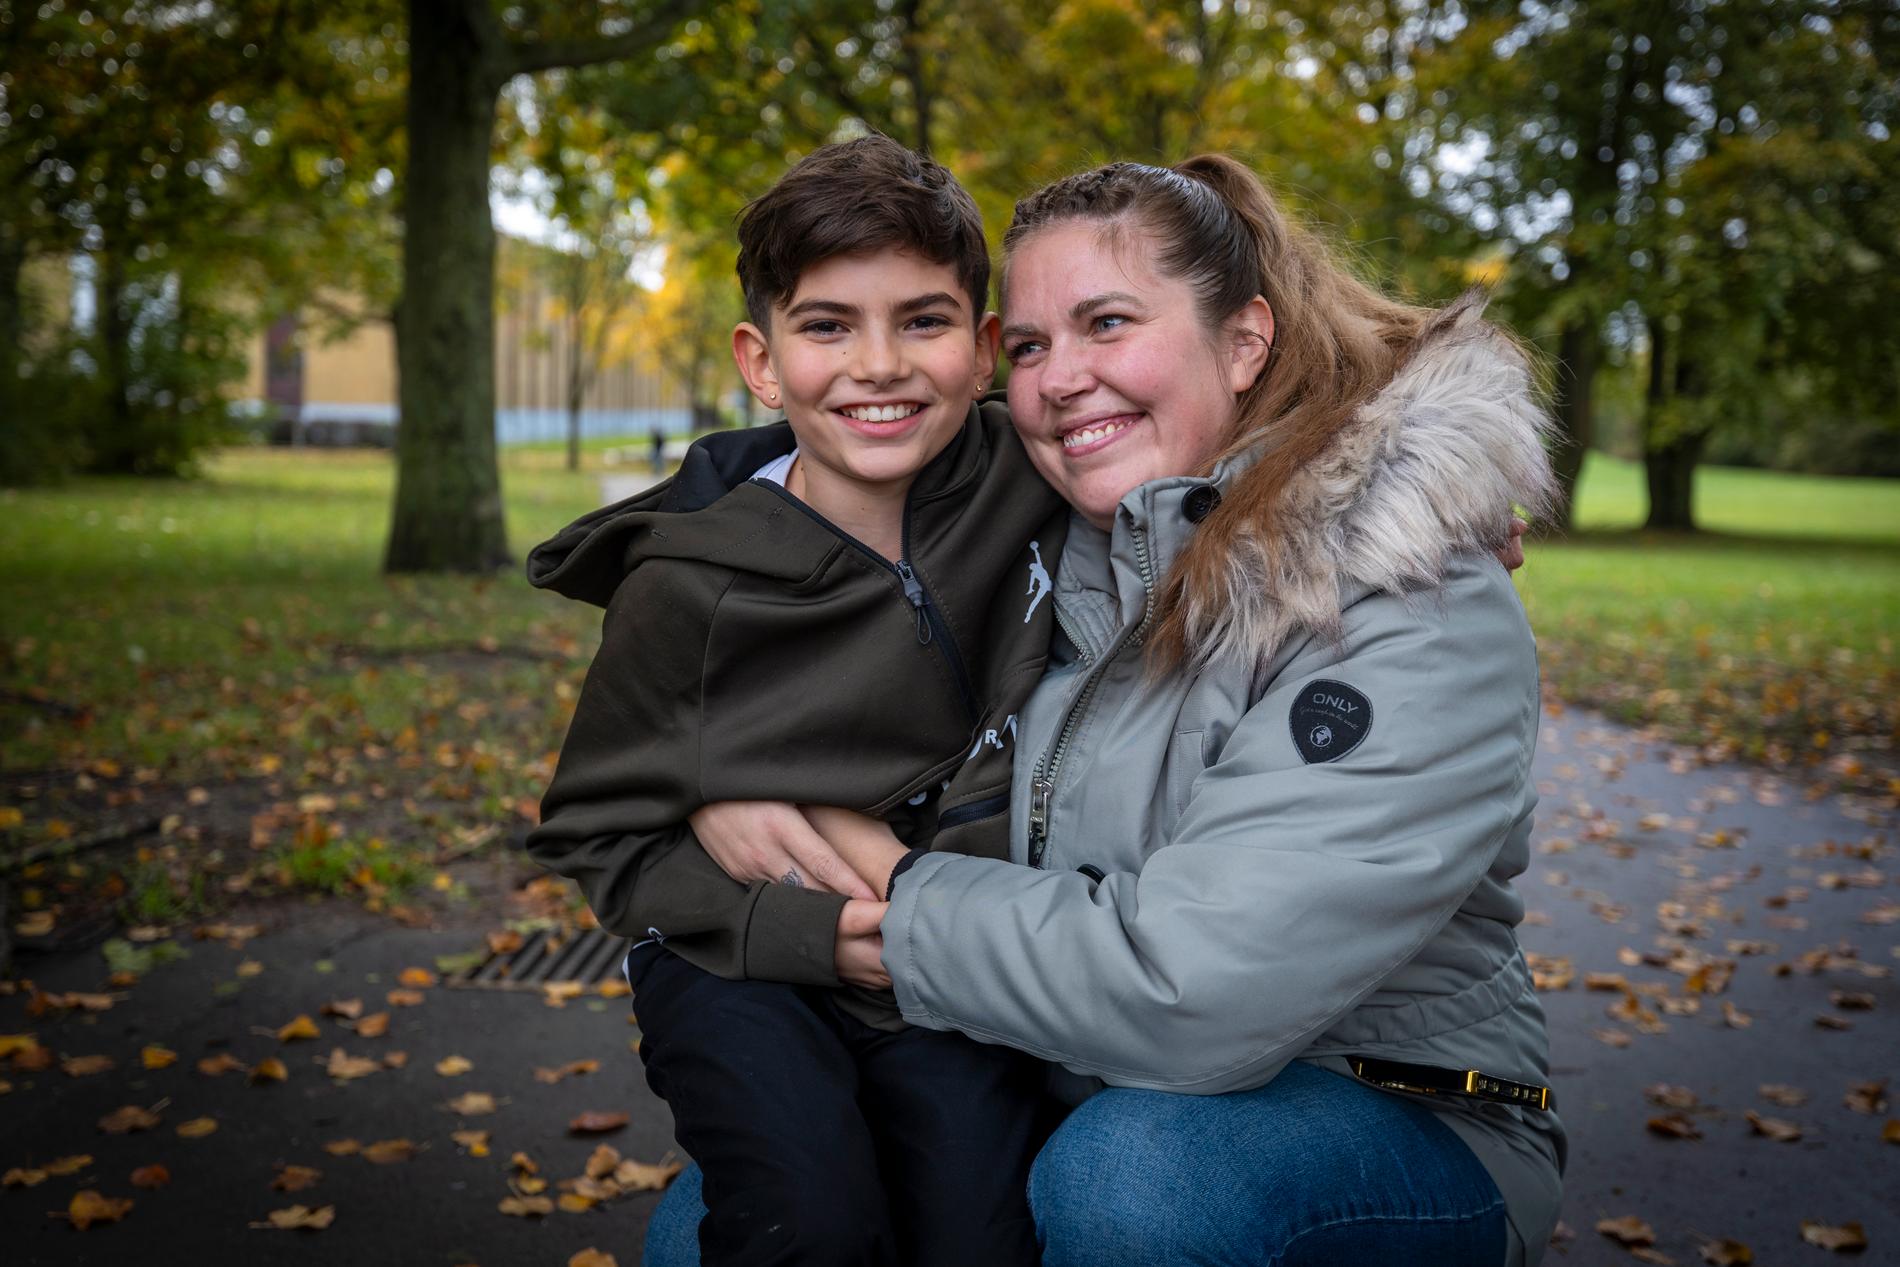 ”Jag är glad att de var där”, säger Elias Larsson, 10, om kompisarna. Här med sin mamma Emma Larsson, 38.